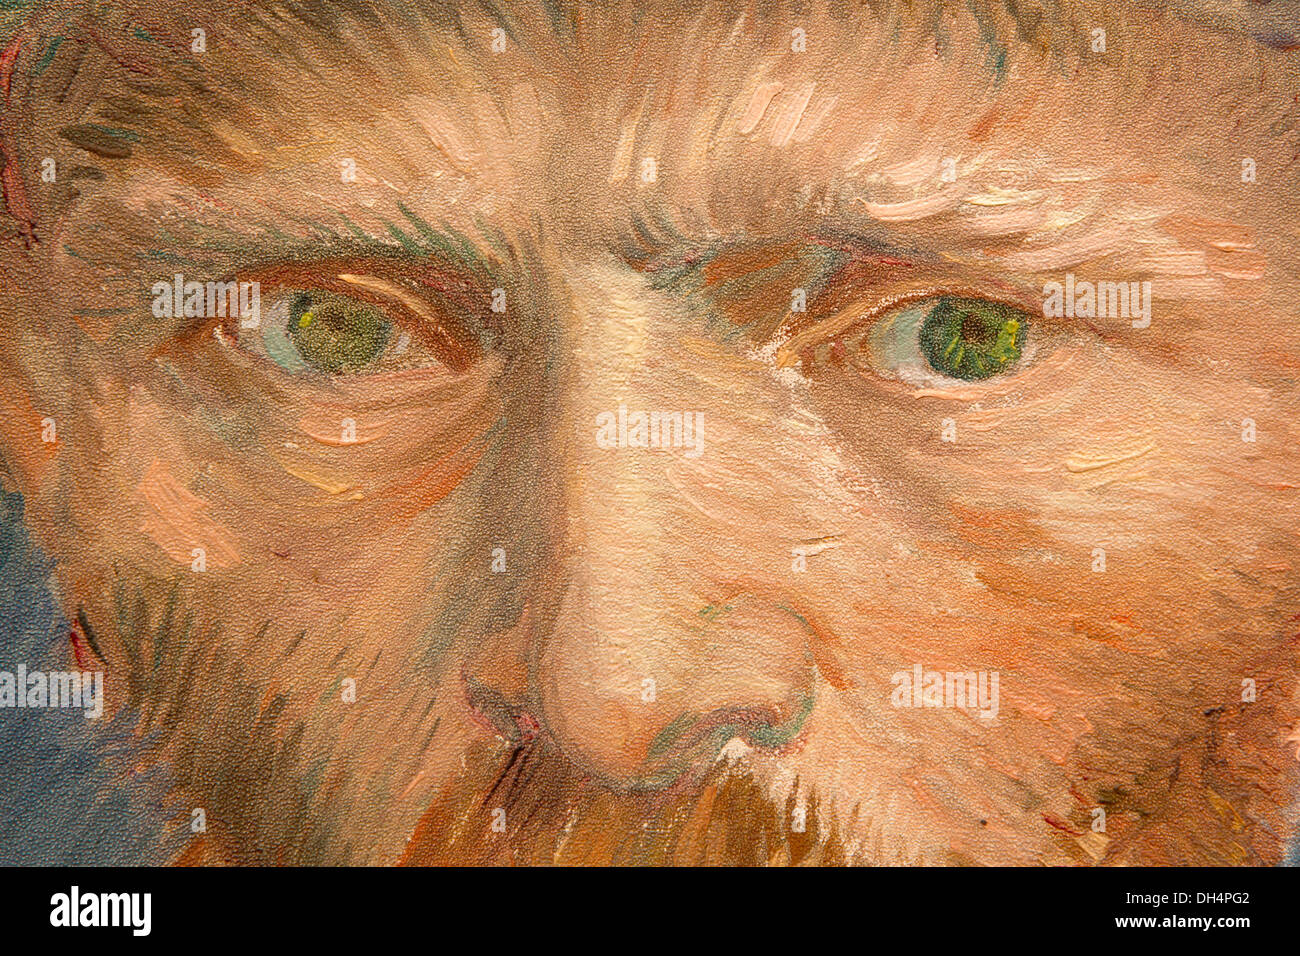 Países Bajos, Amsterdam, Rijksmuseum. Autorretrato, Vincent van Gogh, 1887, detalle Foto de stock